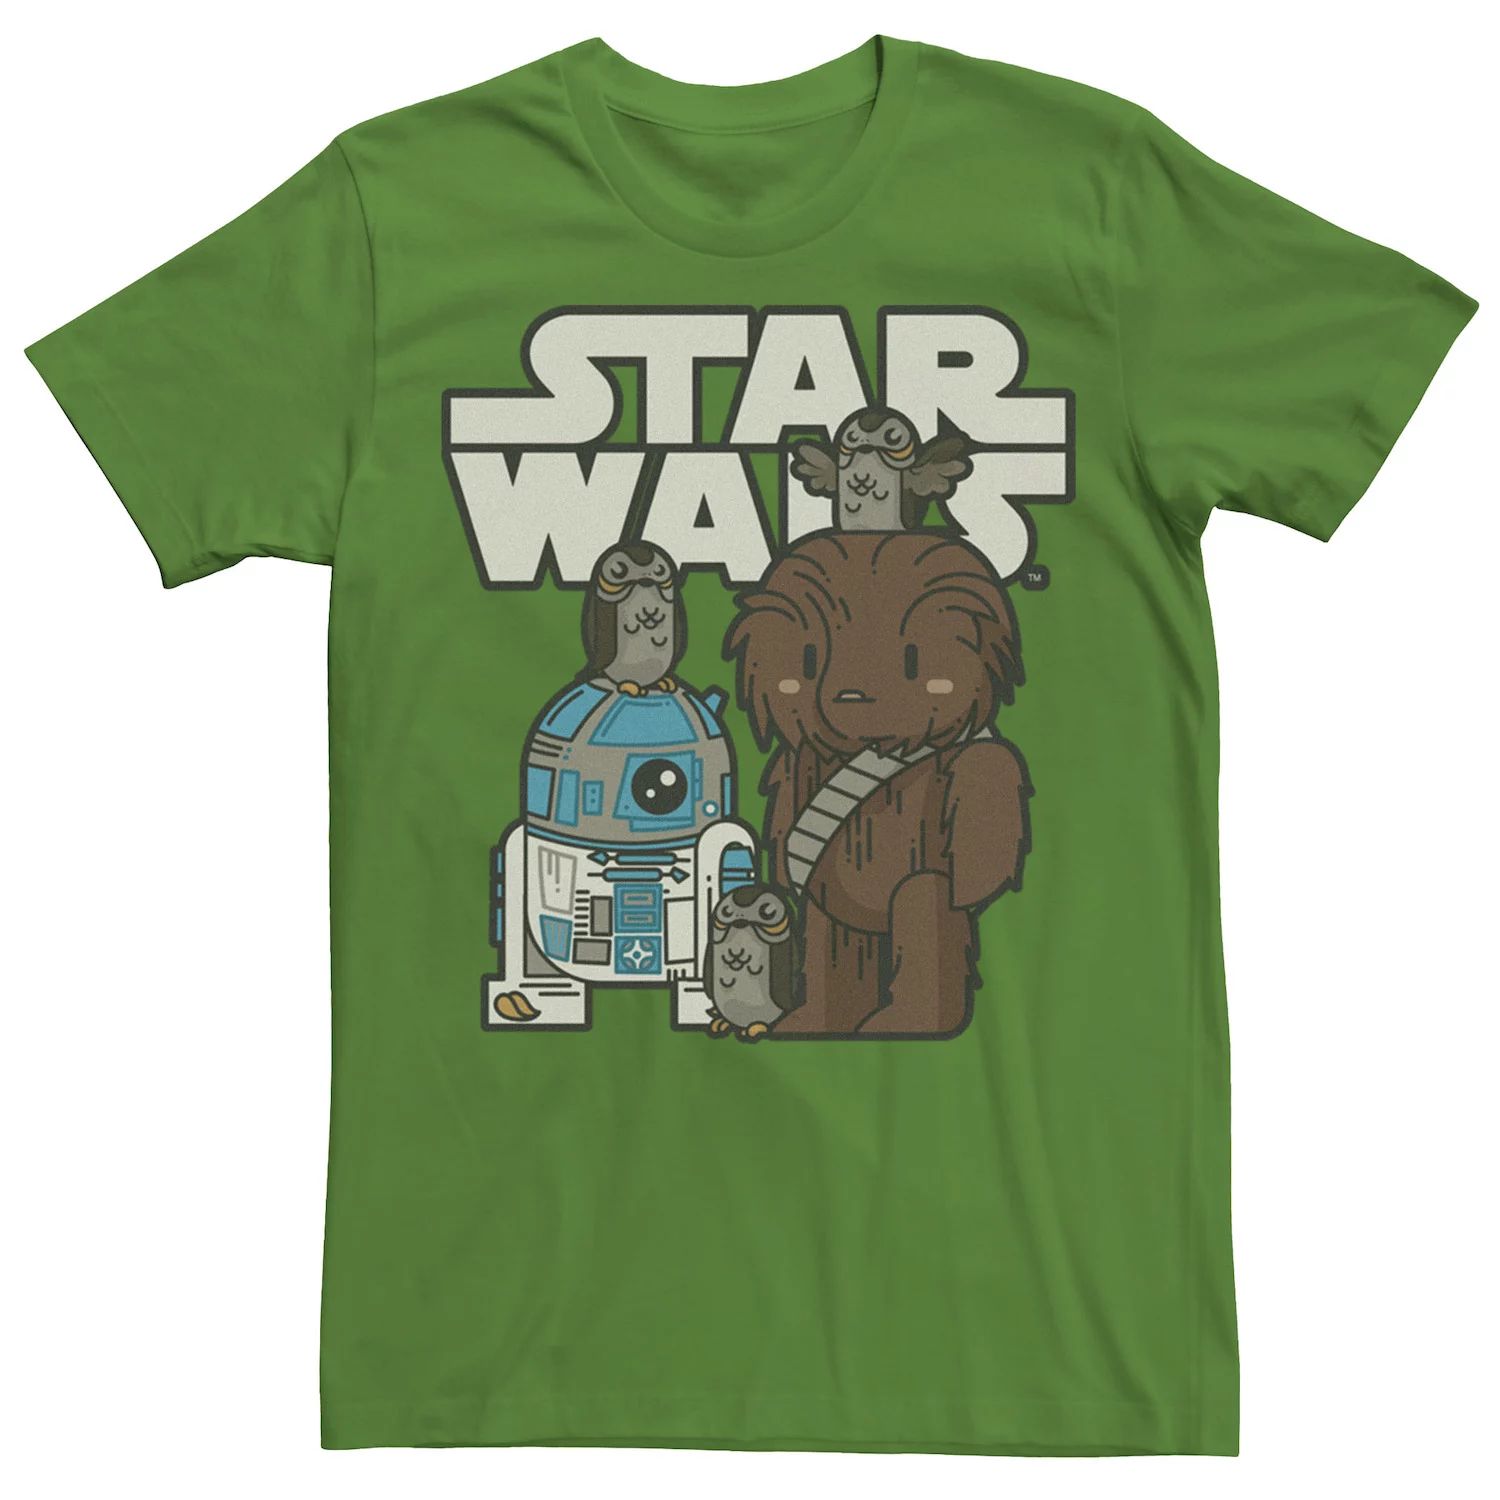 Мужская футболка с героями мультфильмов «Последние джедаи Звездных войн» R2-D2, Porgs и Chewie Cutie Marvel